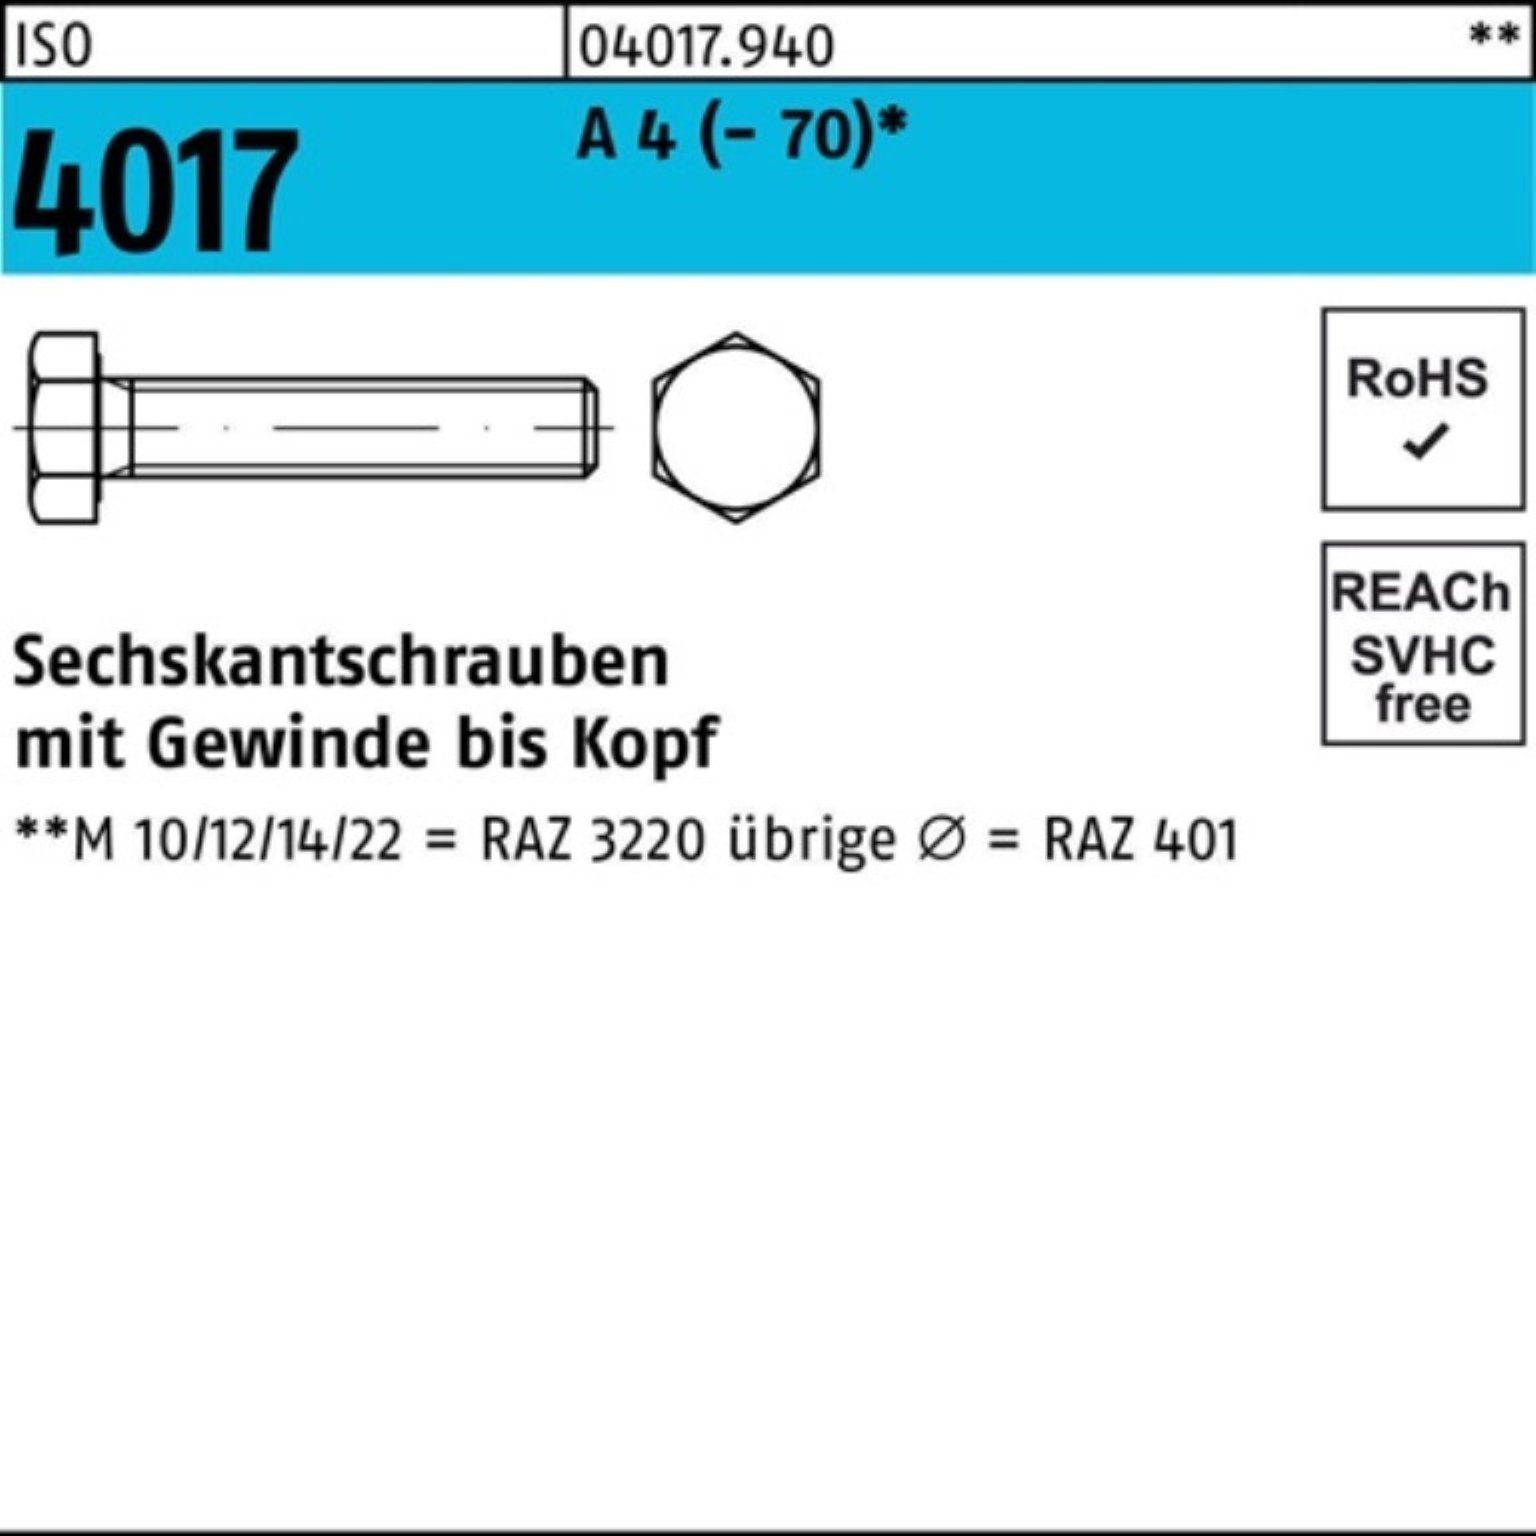 Sechskantschraube Pack VG Sechskantschraube 100er ISO Stück A Bufab 65 25 (70) M16x 4017 4